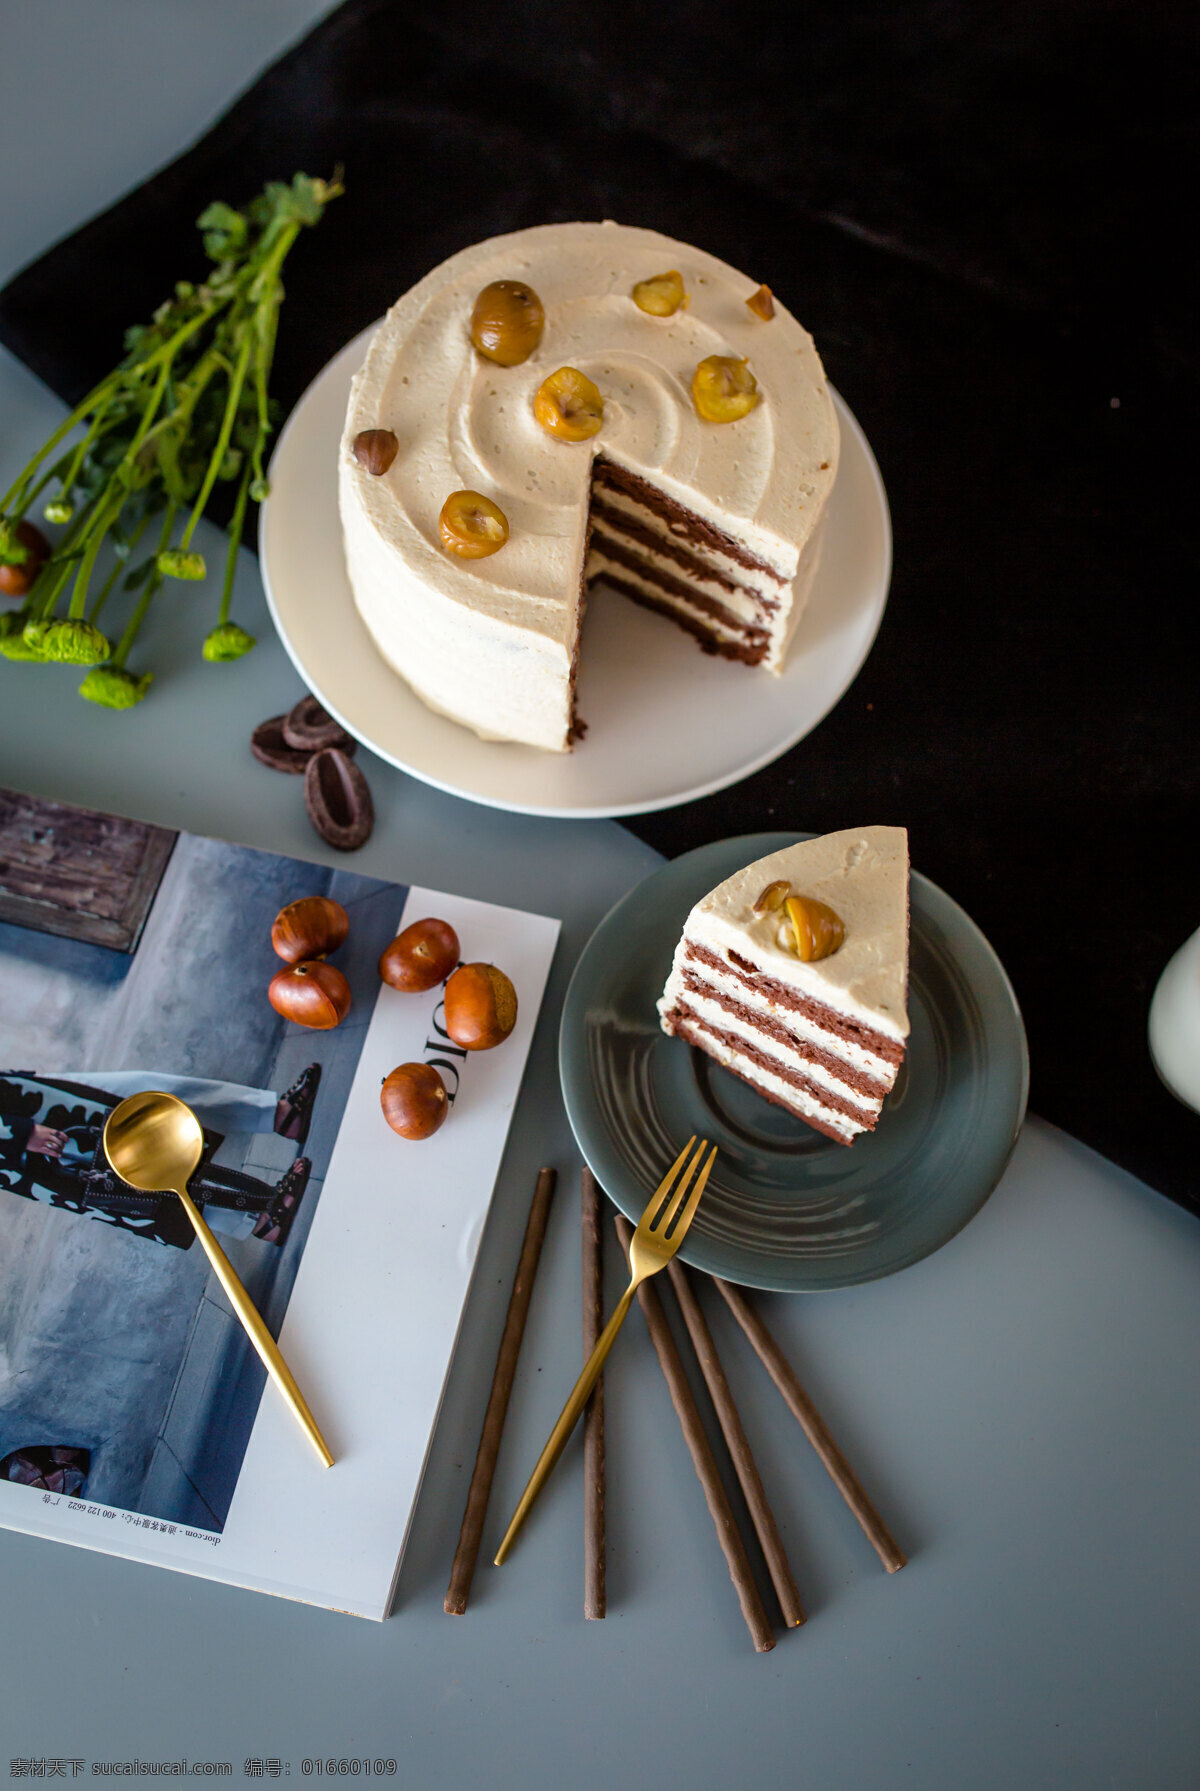 栗子蛋糕 甜品 蛋糕 切块 点心 甜点 栗子 夹层 法式蛋糕 餐饮美食 西餐美食